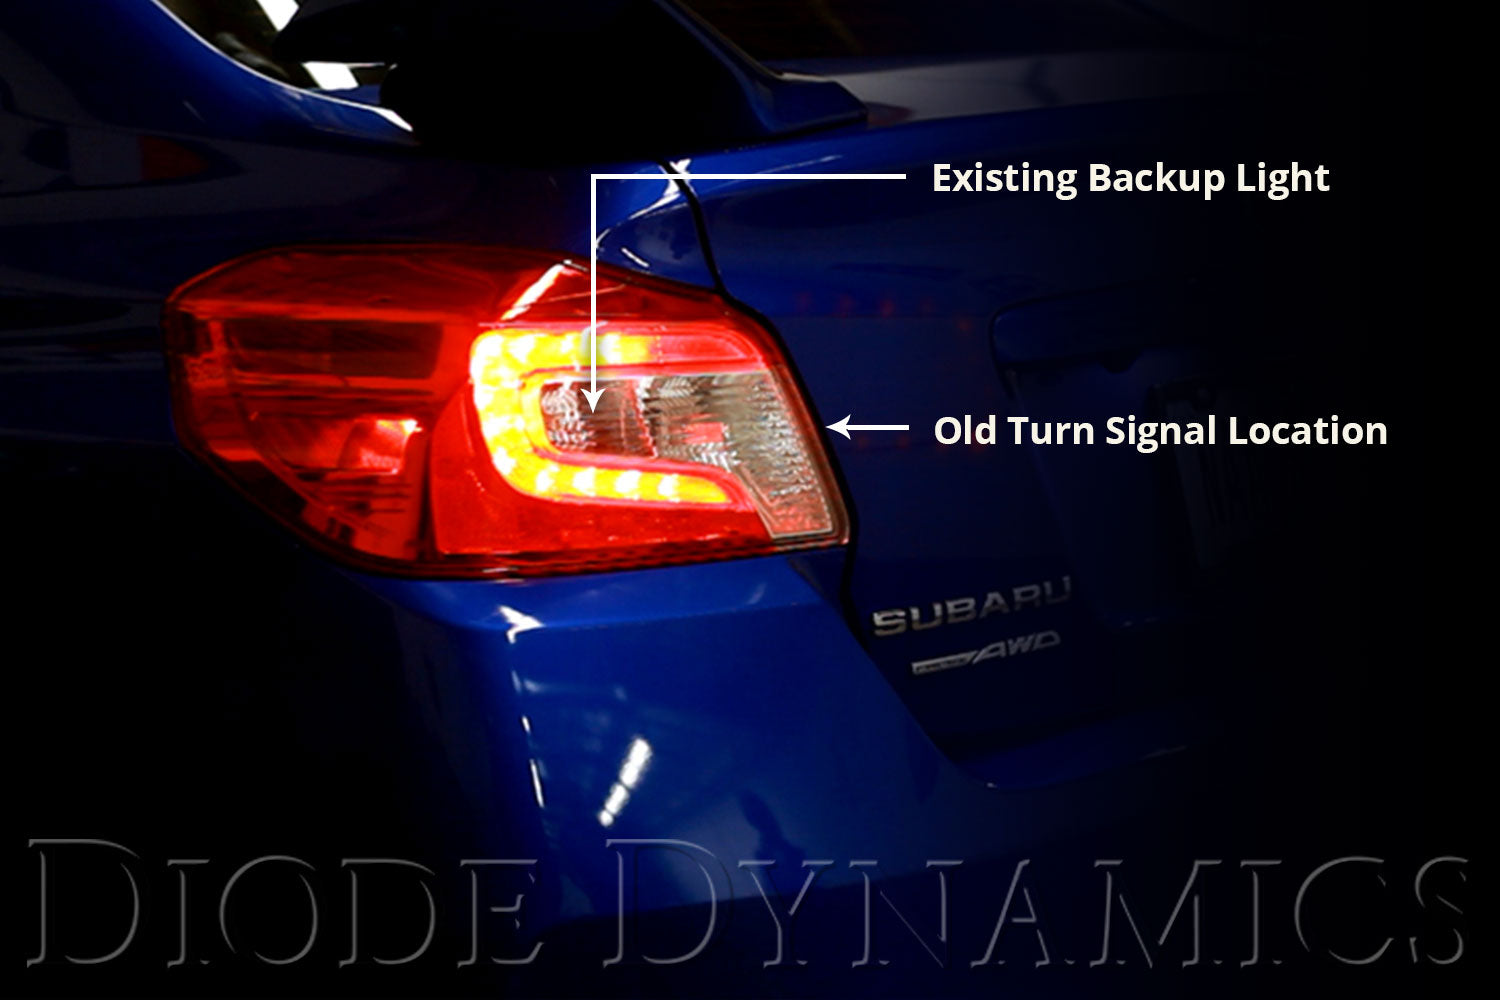 Tail as Turn Kit w/ Backup for 2015-2021 Subaru WRX / STi, Stage 2